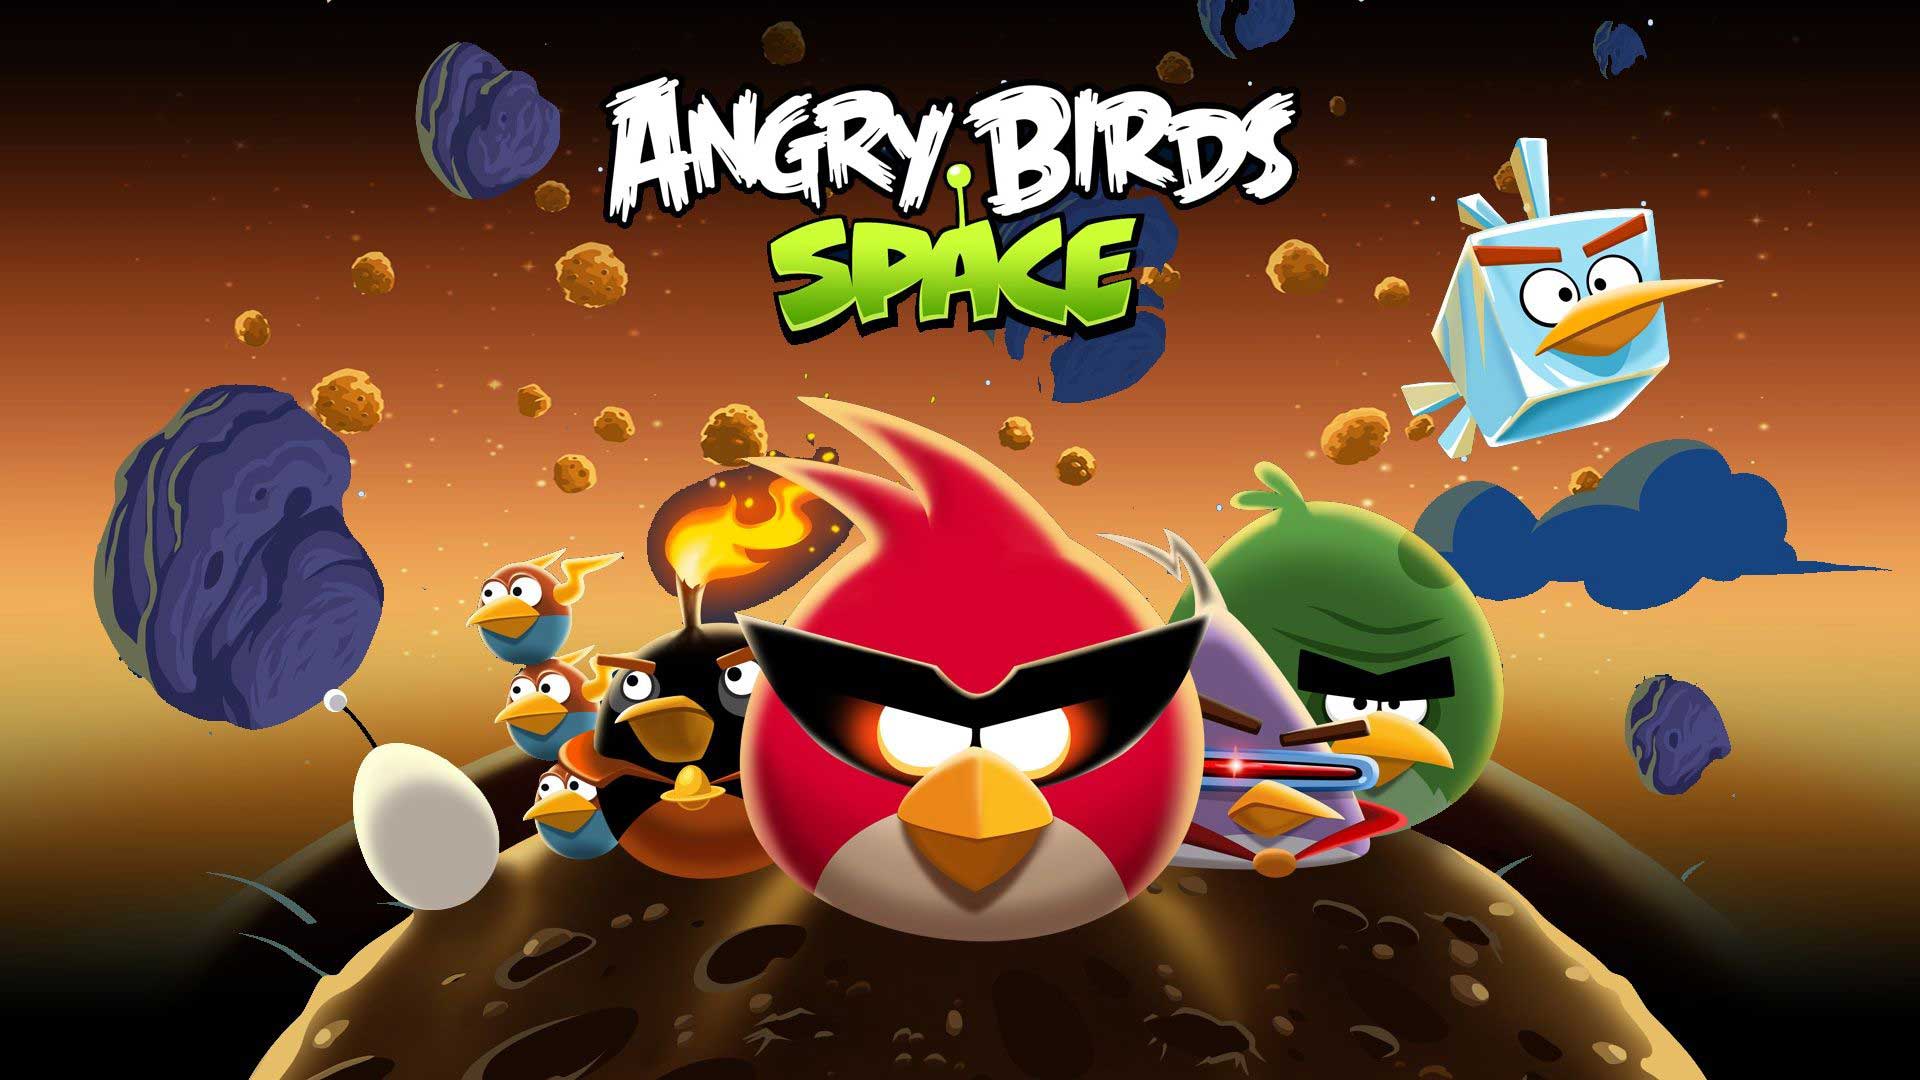 پرندگان خشمگین در بازی Angry Birds Space